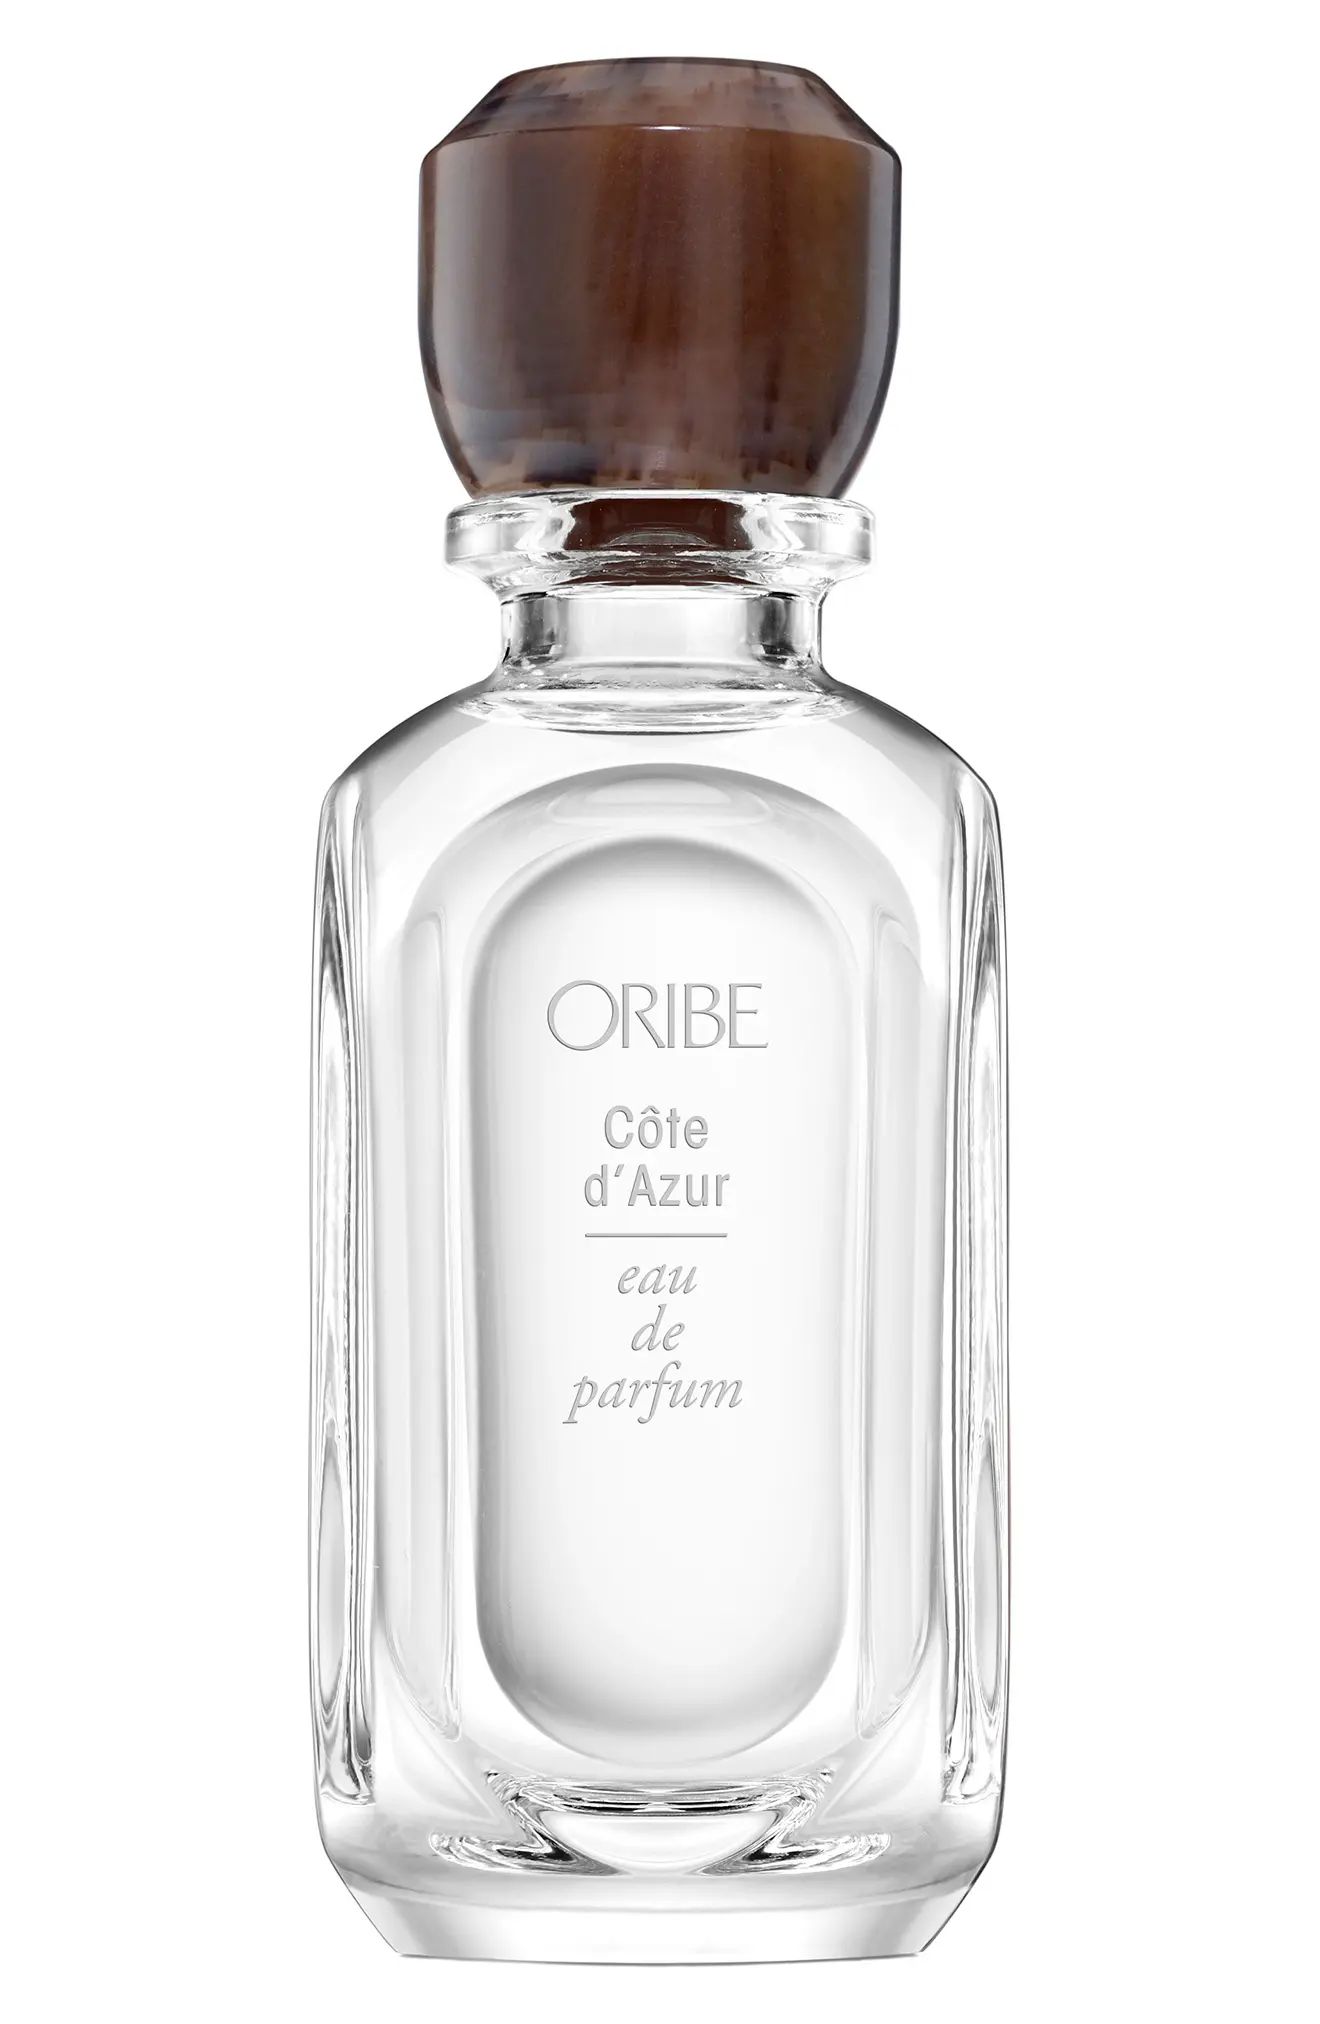 Oribe Cote d'Azur Eau de Parfum at Nordstrom, Size 2.54 Oz | Nordstrom